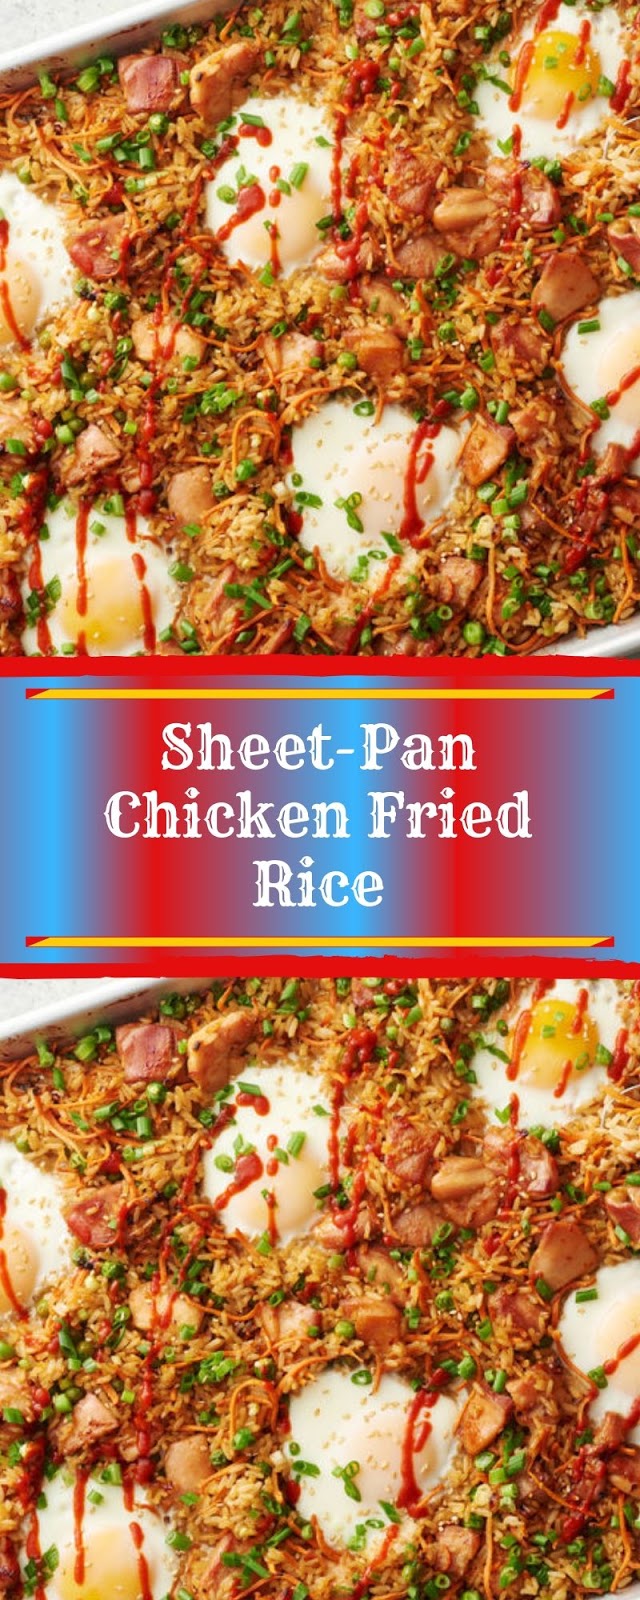 Sheet-Pan Chicken Fried Rice